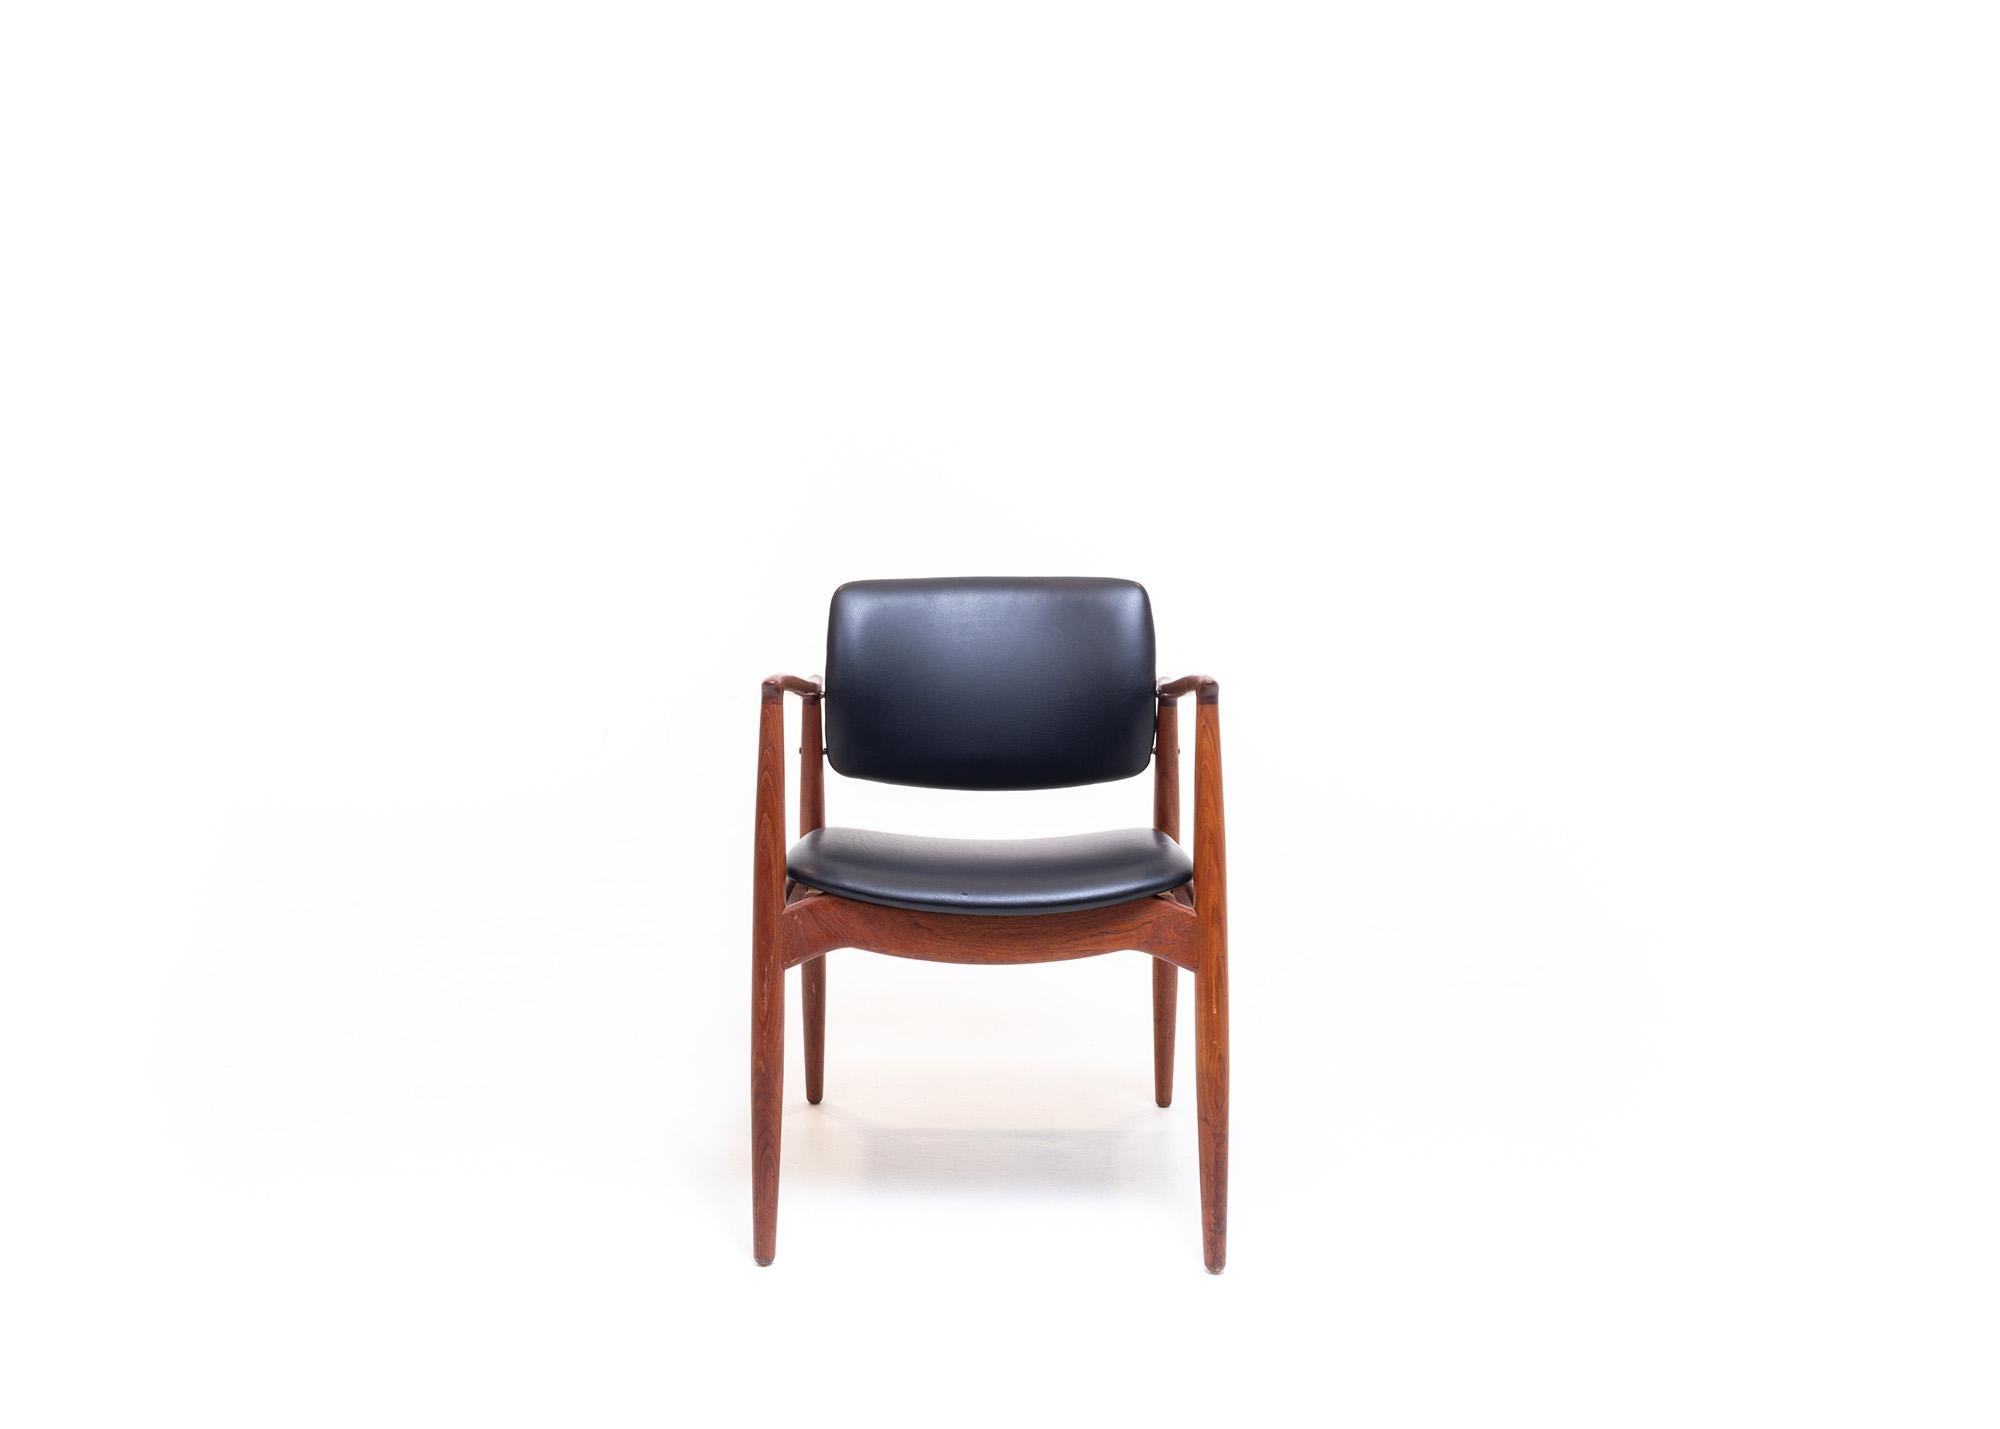 Der Kapitänssessel Modell 67 von Erik Buch für Ørum Møbler ist ein zeitloses und elegantes Möbelstück, das jeden Raum stilvoll aufwertet. Dieser mit viel Liebe zum Detail gefertigte Stuhl verbindet Form und Funktion auf perfekte Weise.

Das Design